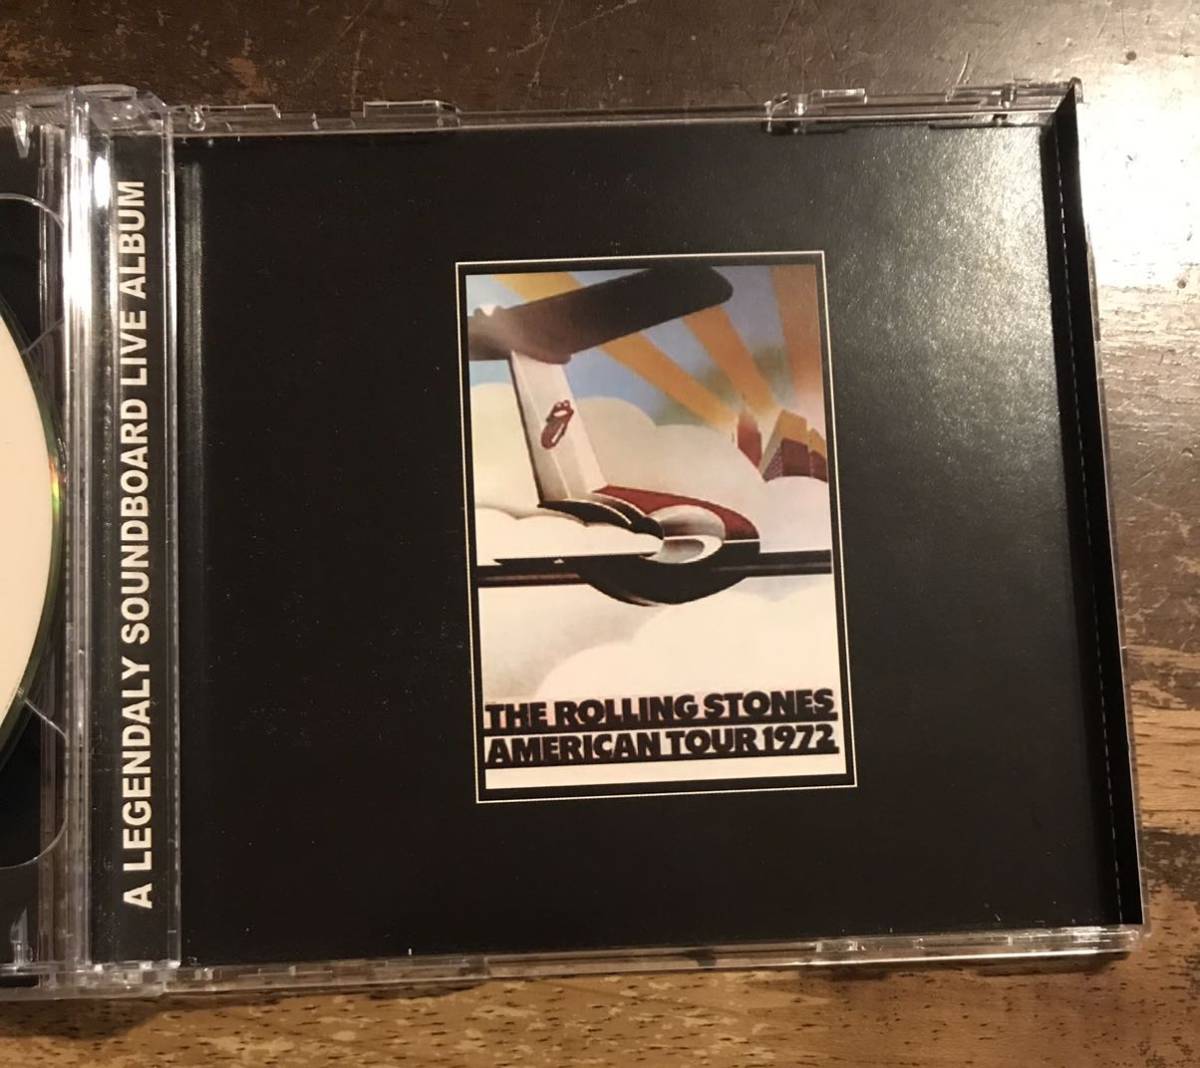 200セット限定2CD盤 / The Rolling Stones / ローリングストーンズ / Philadelphia Special / 1CD + 200 Limited Bonus CDR ■ Soundboard_画像7